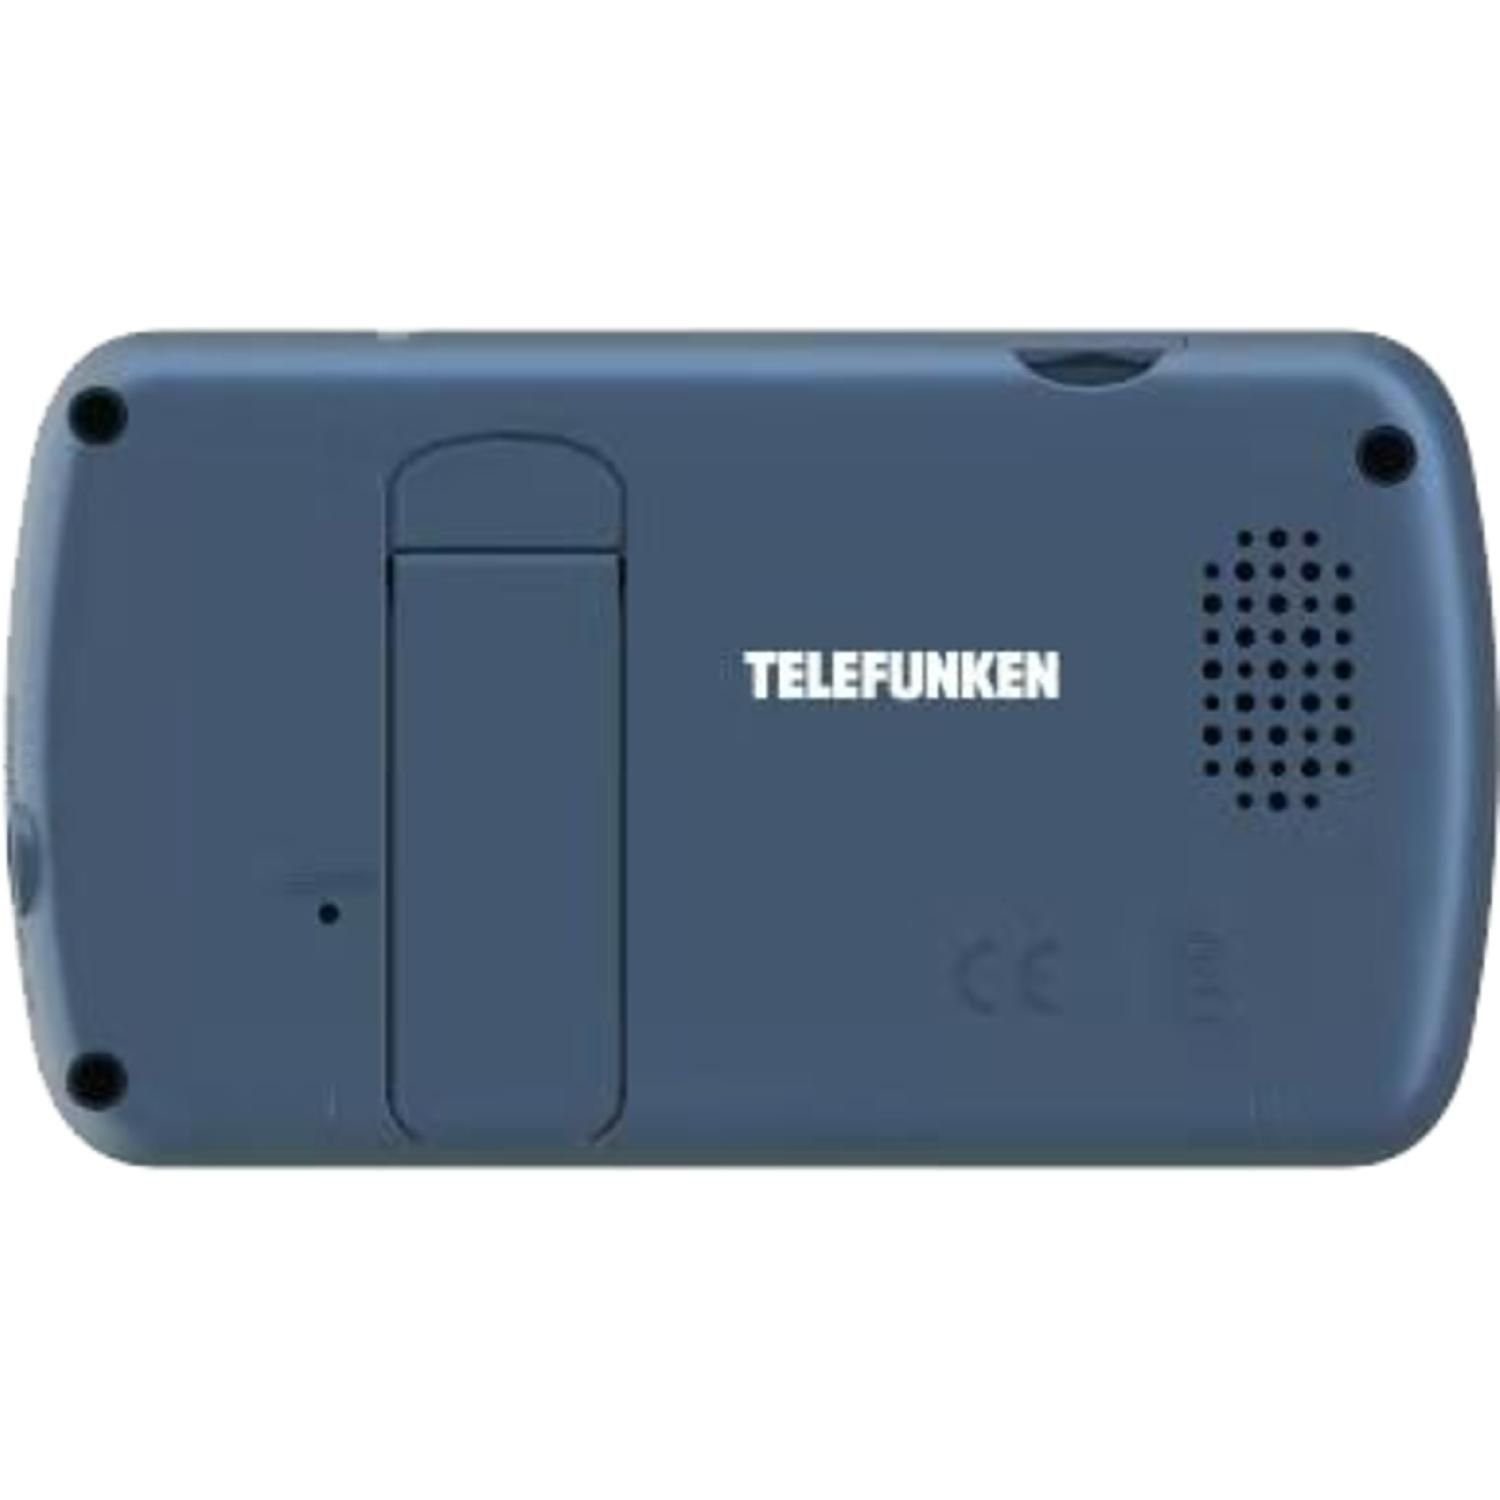 Video-Babyphone Infrarotmodus 320x240 Display Kamera Telefunken VM-F200 Video-Babyphone Starre 2,4'' Px,